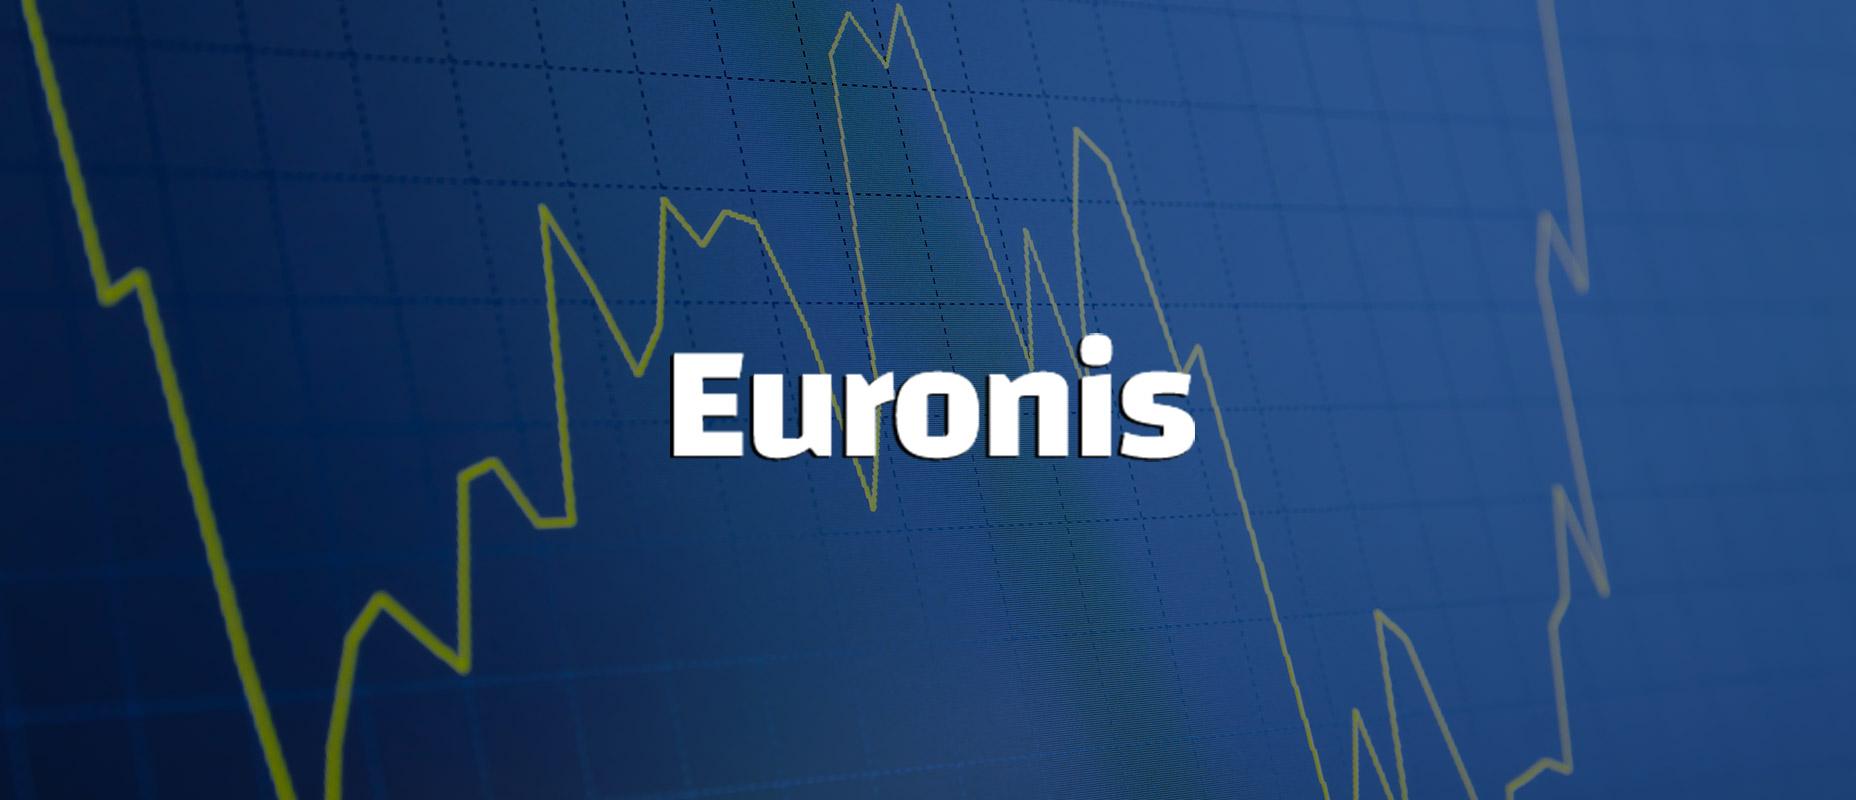 Testing Euronis on EUR/USD